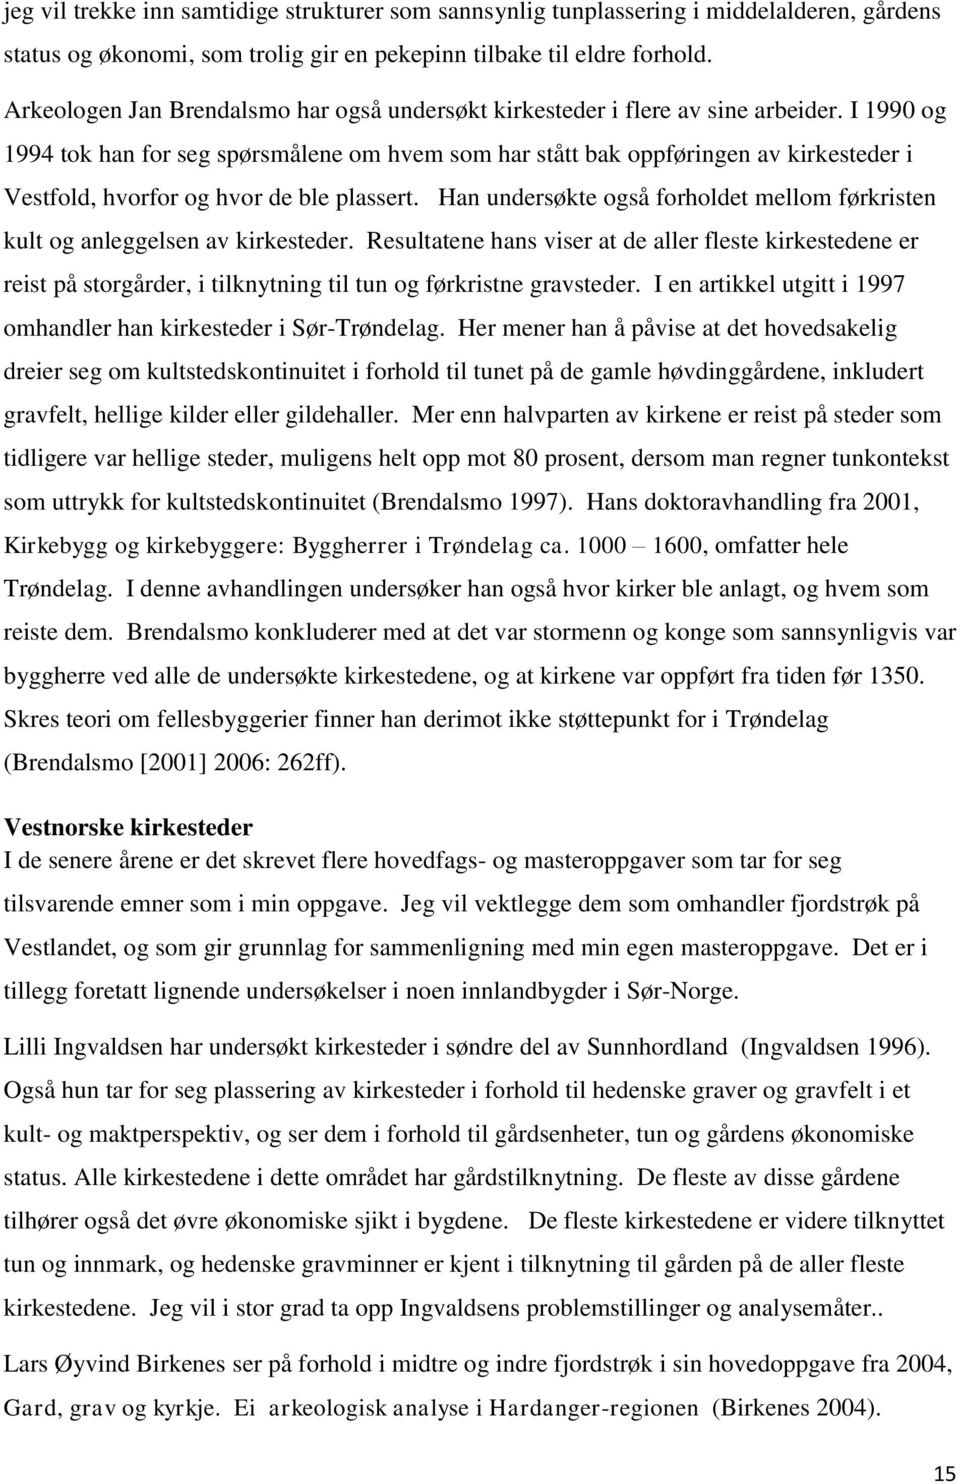 I 1990 og 1994 tok han for seg spørsmålene om hvem som har stått bak oppføringen av kirkesteder i Vestfold, hvorfor og hvor de ble plassert.